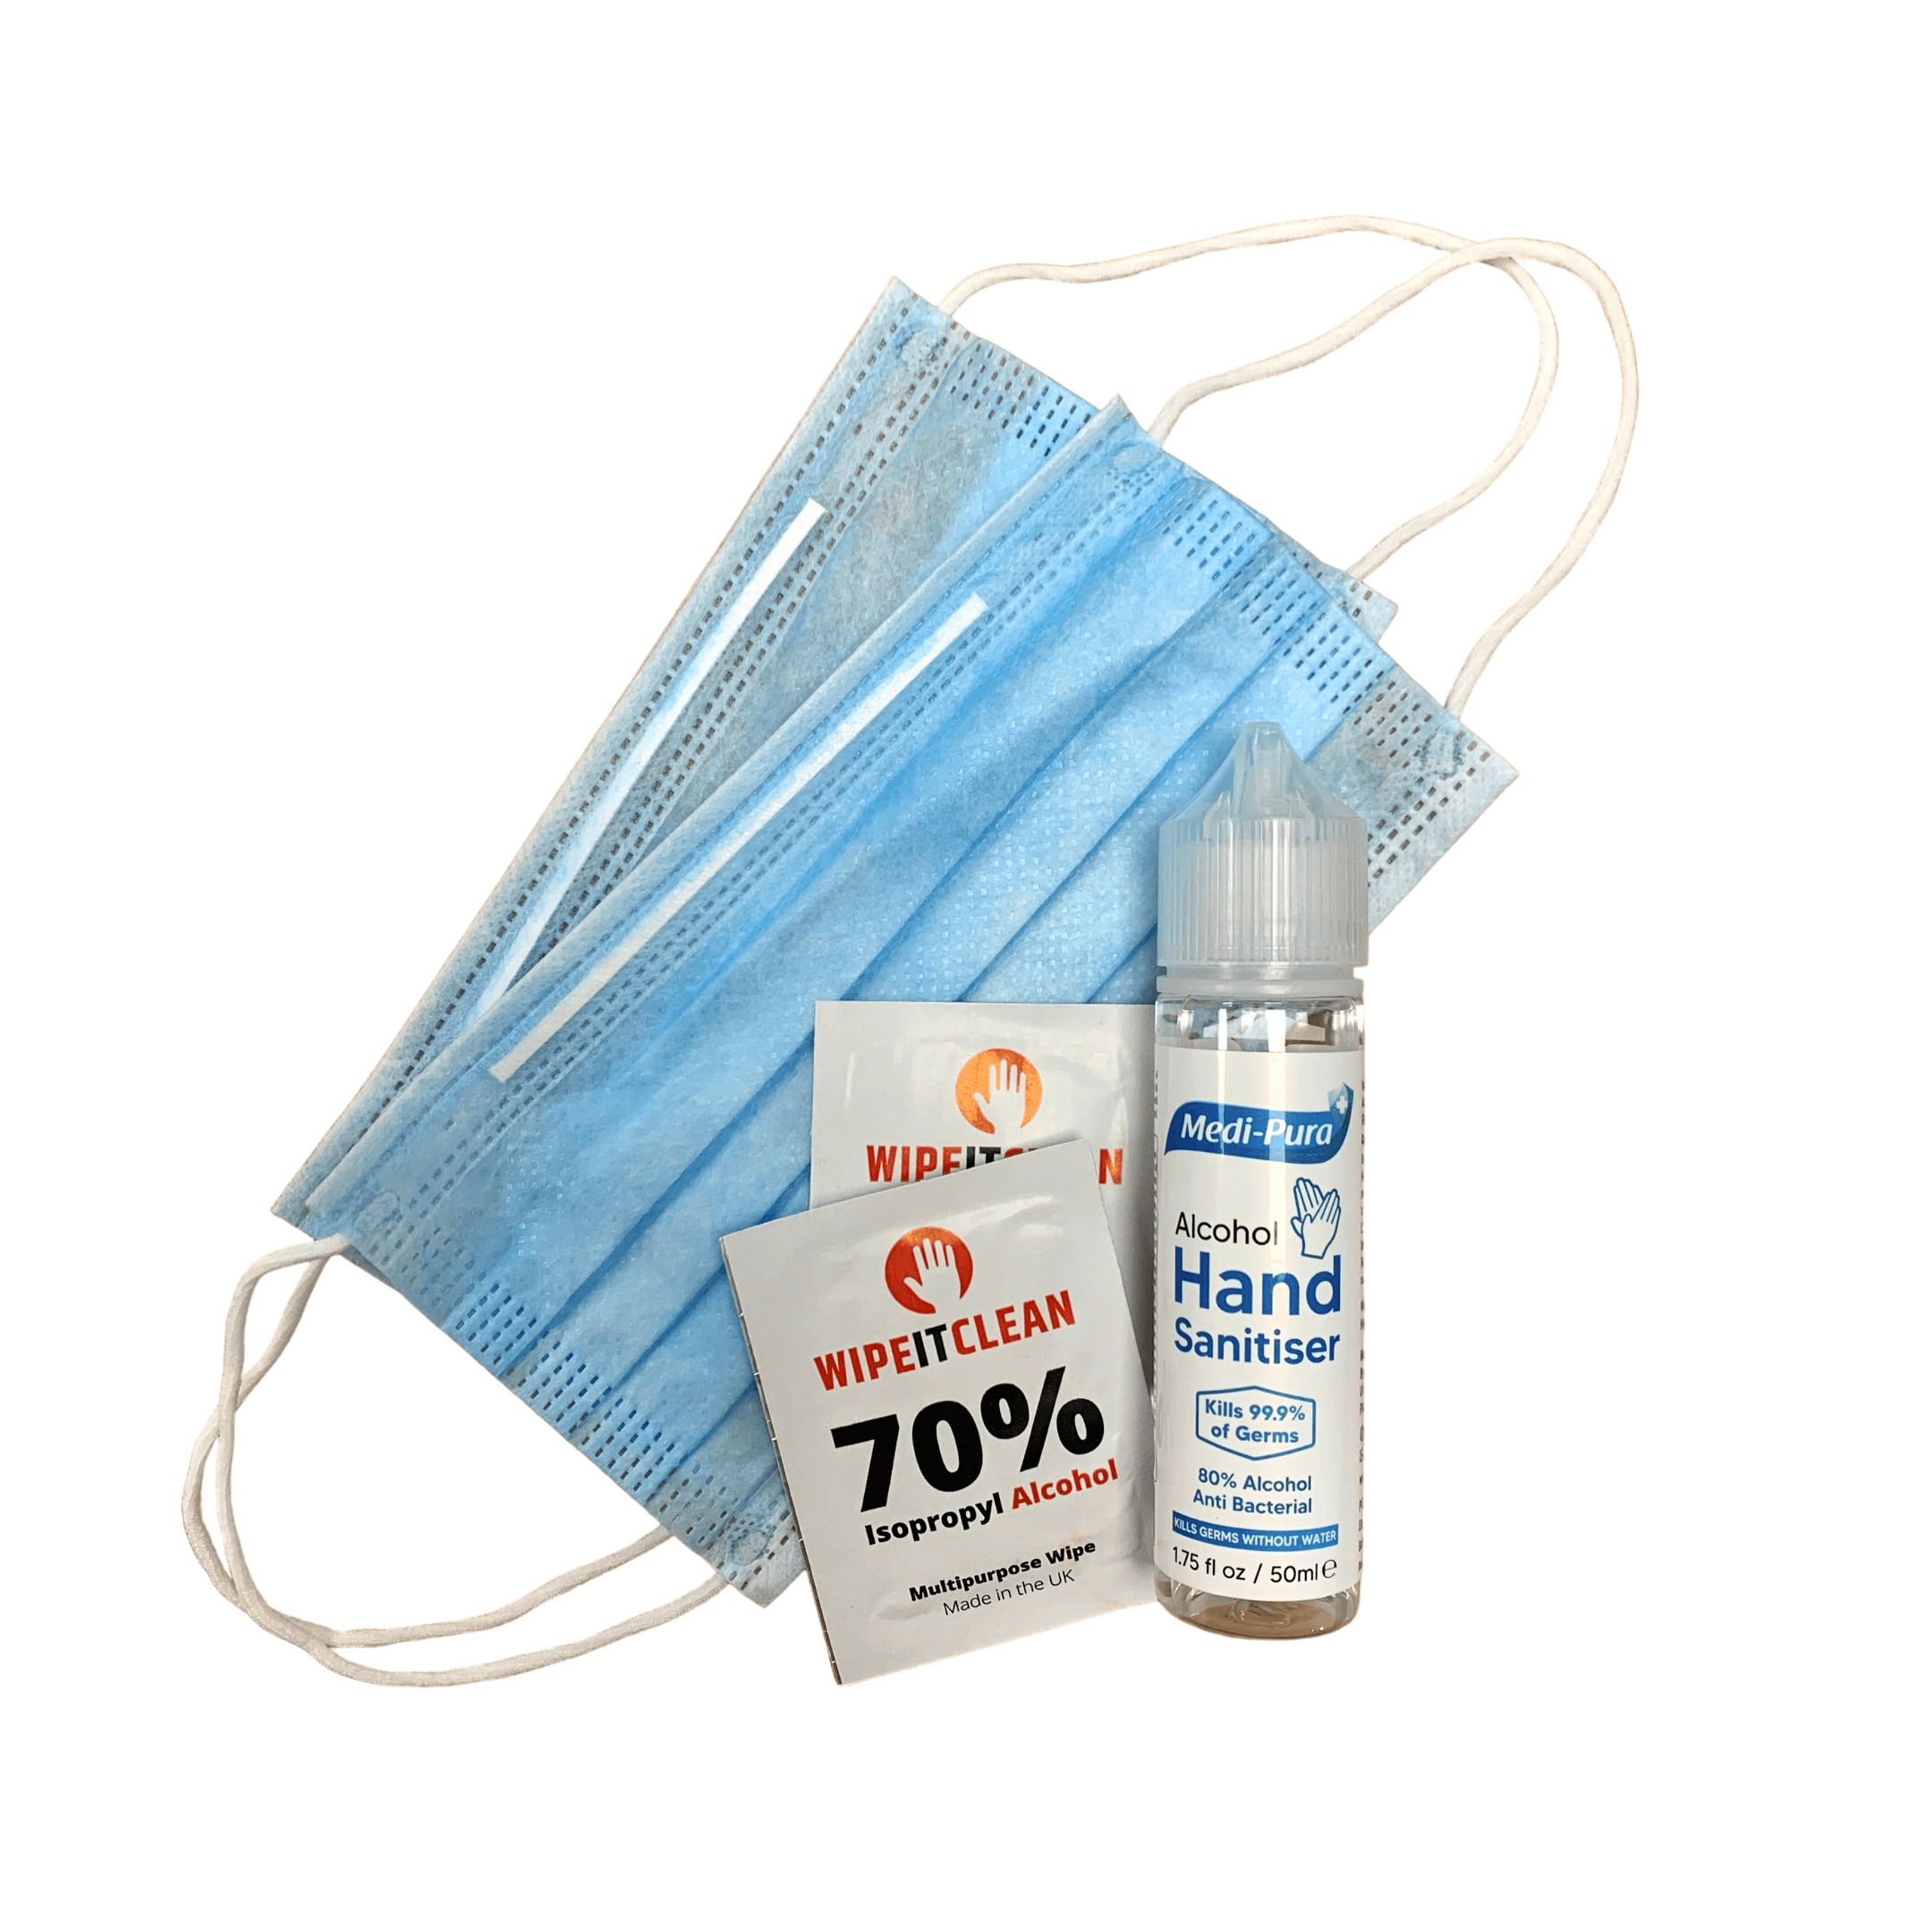 Hygiene Safety Kit